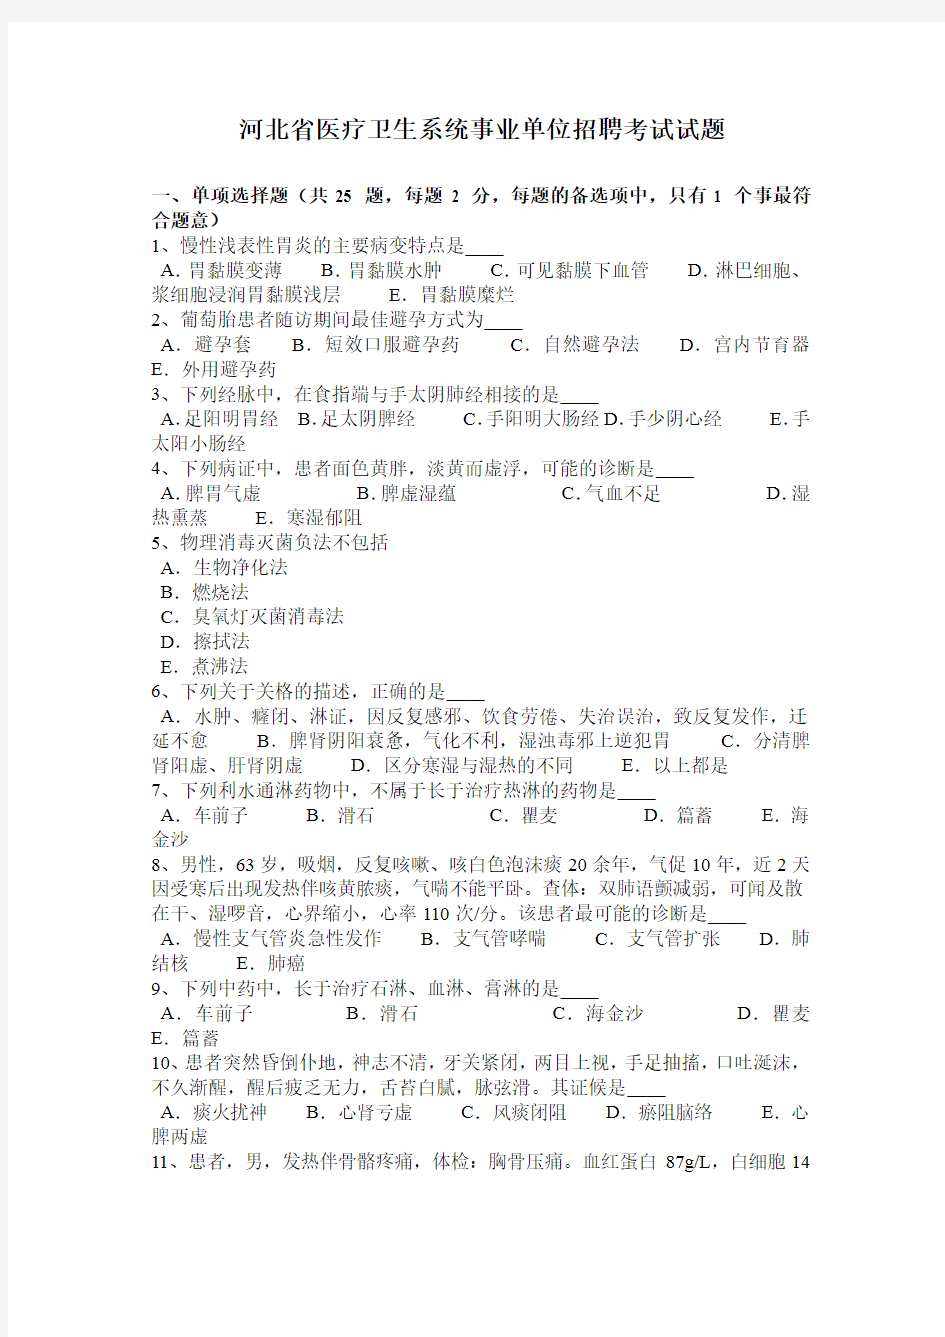 河北省医疗卫生系统事业单位招聘考试试题